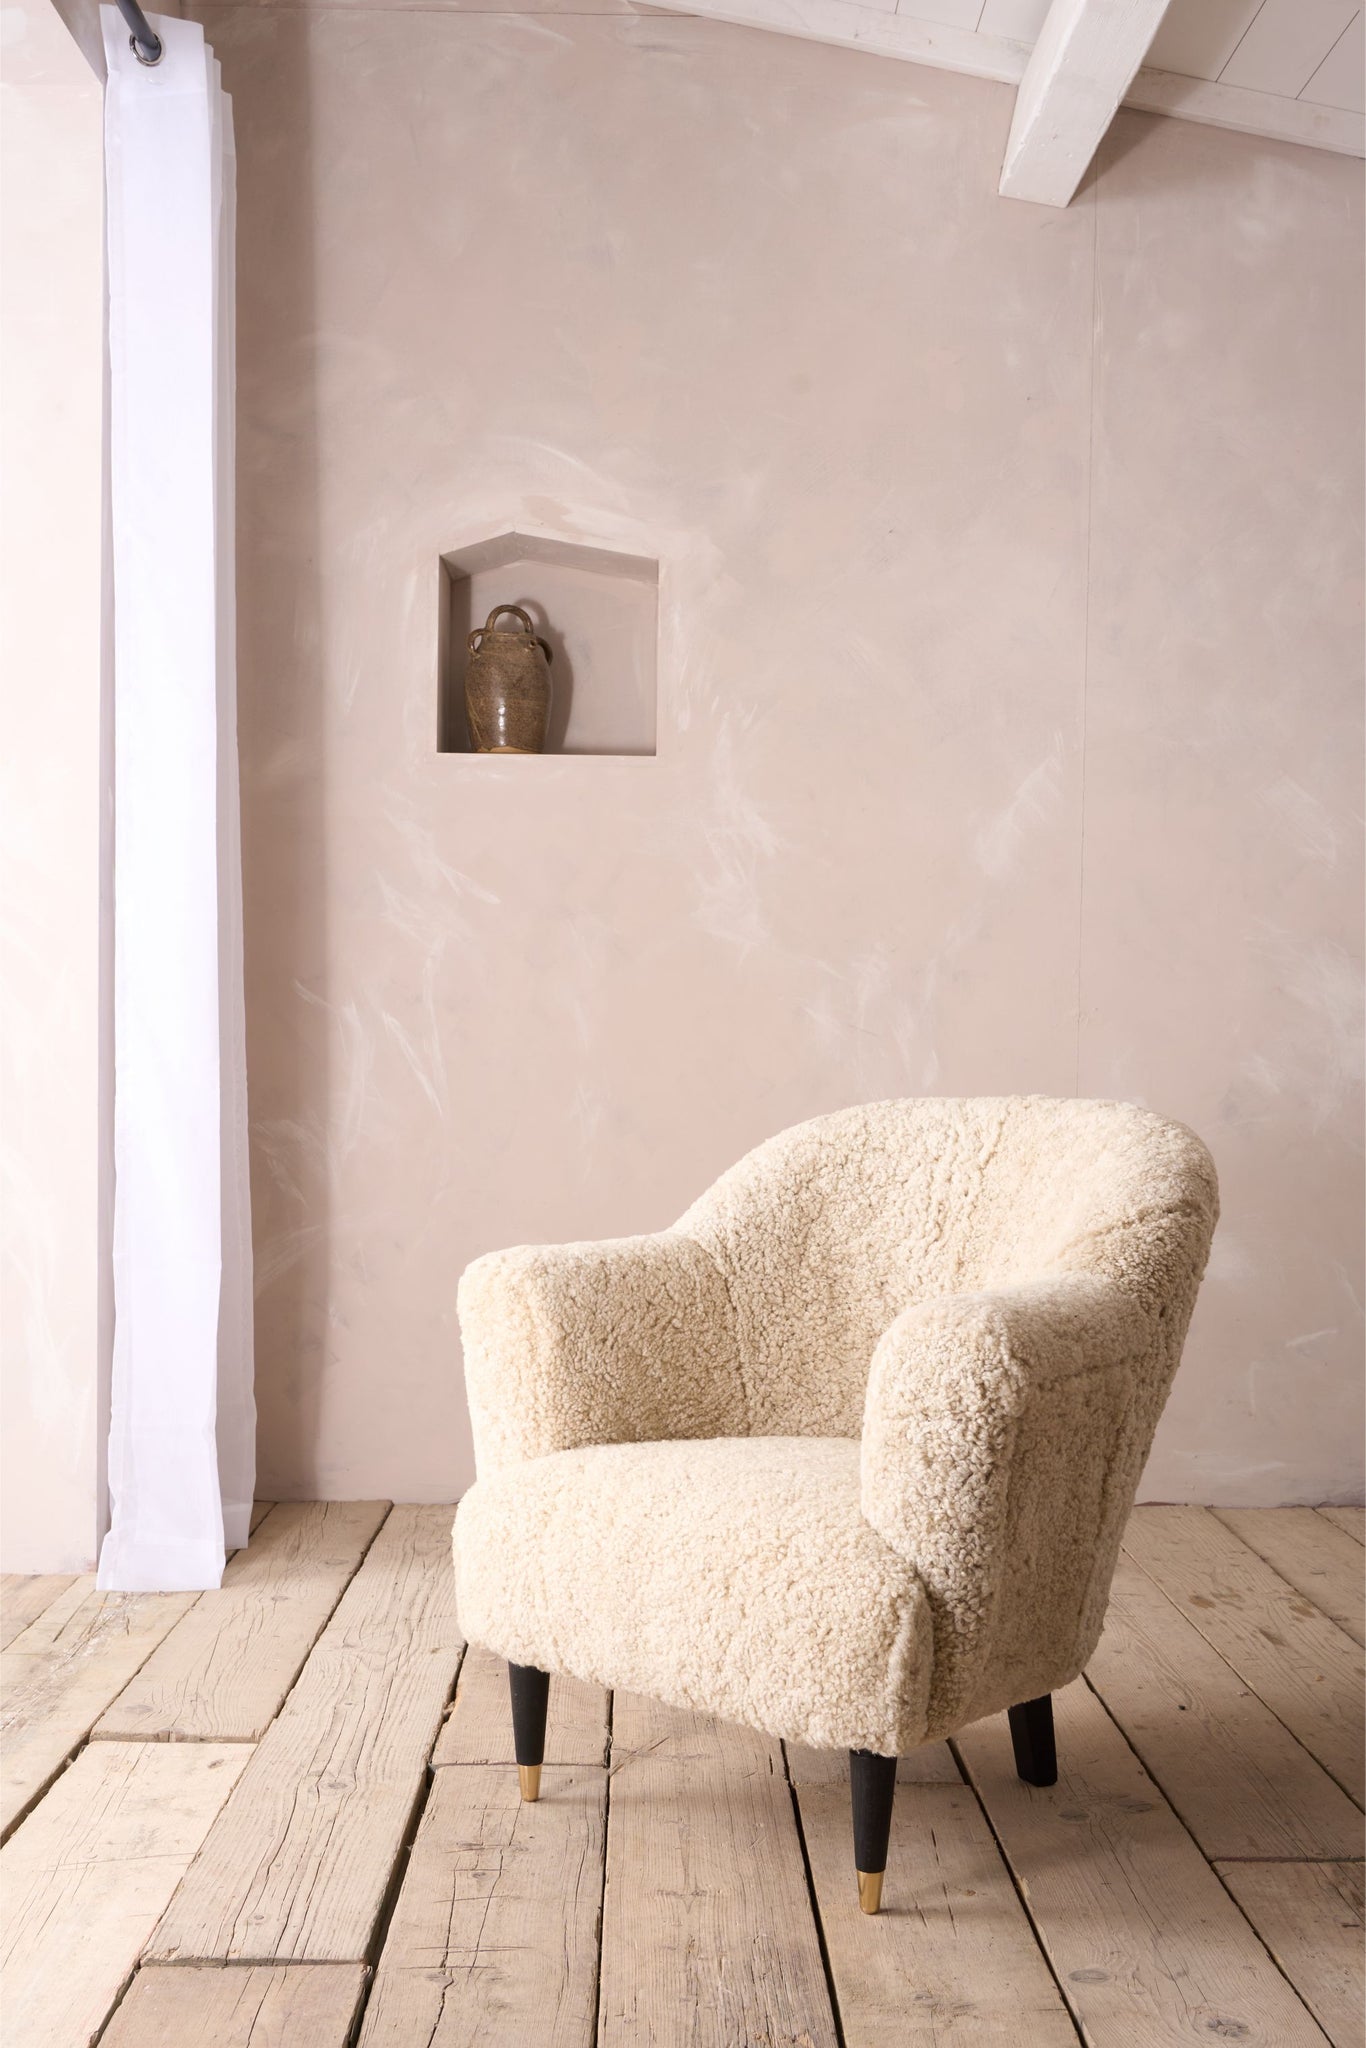 The 'Milo' Sheep wool armchair